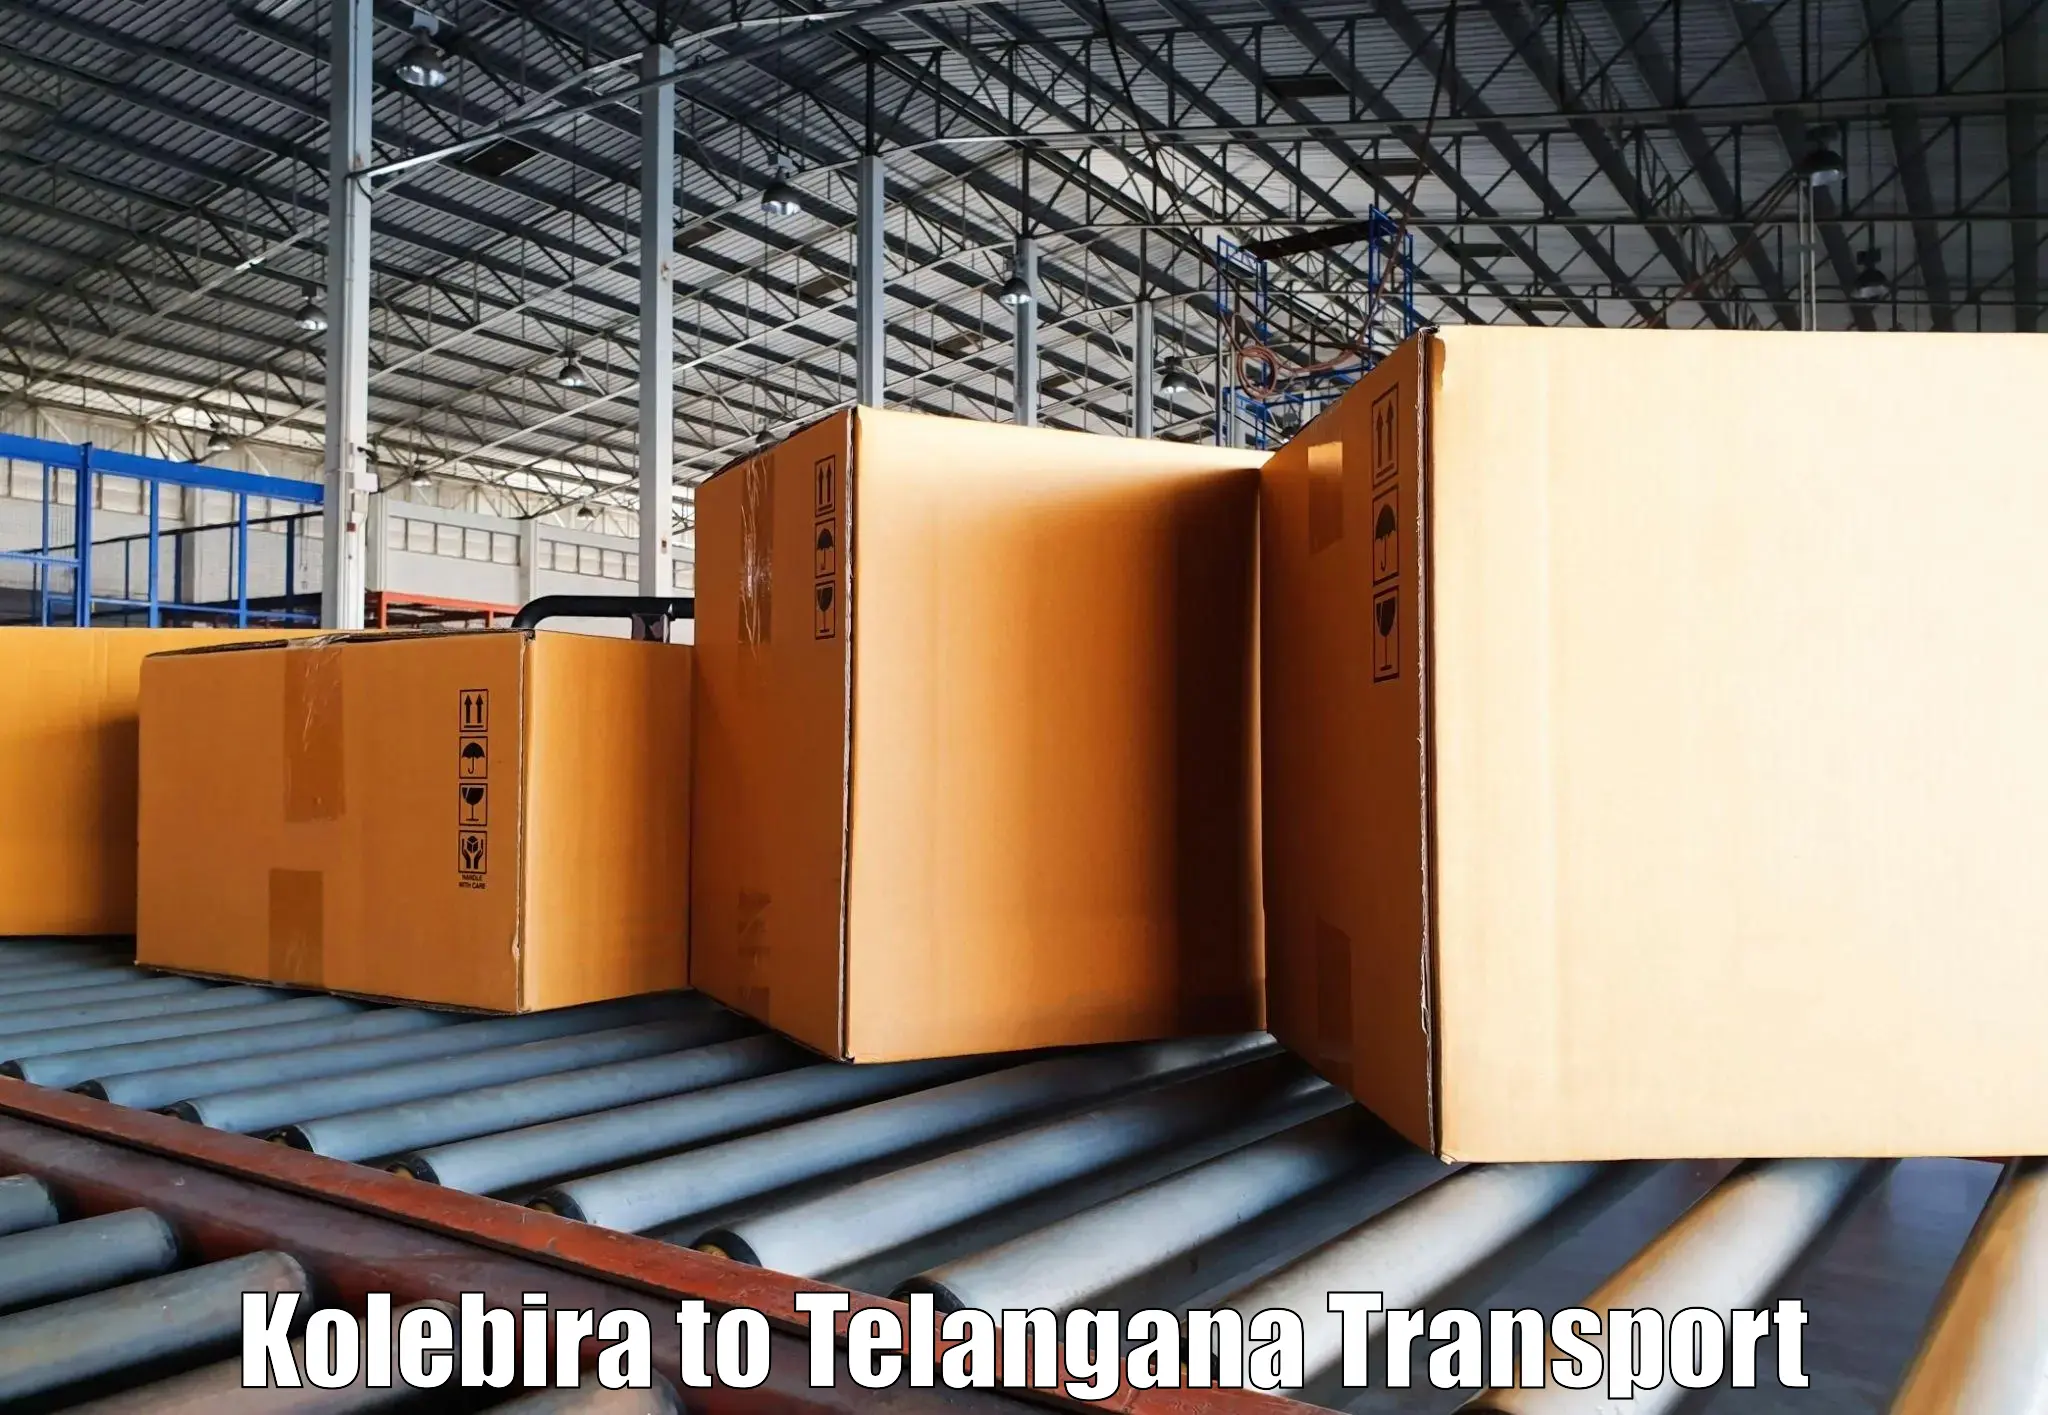 Online transport service Kolebira to Devarakonda